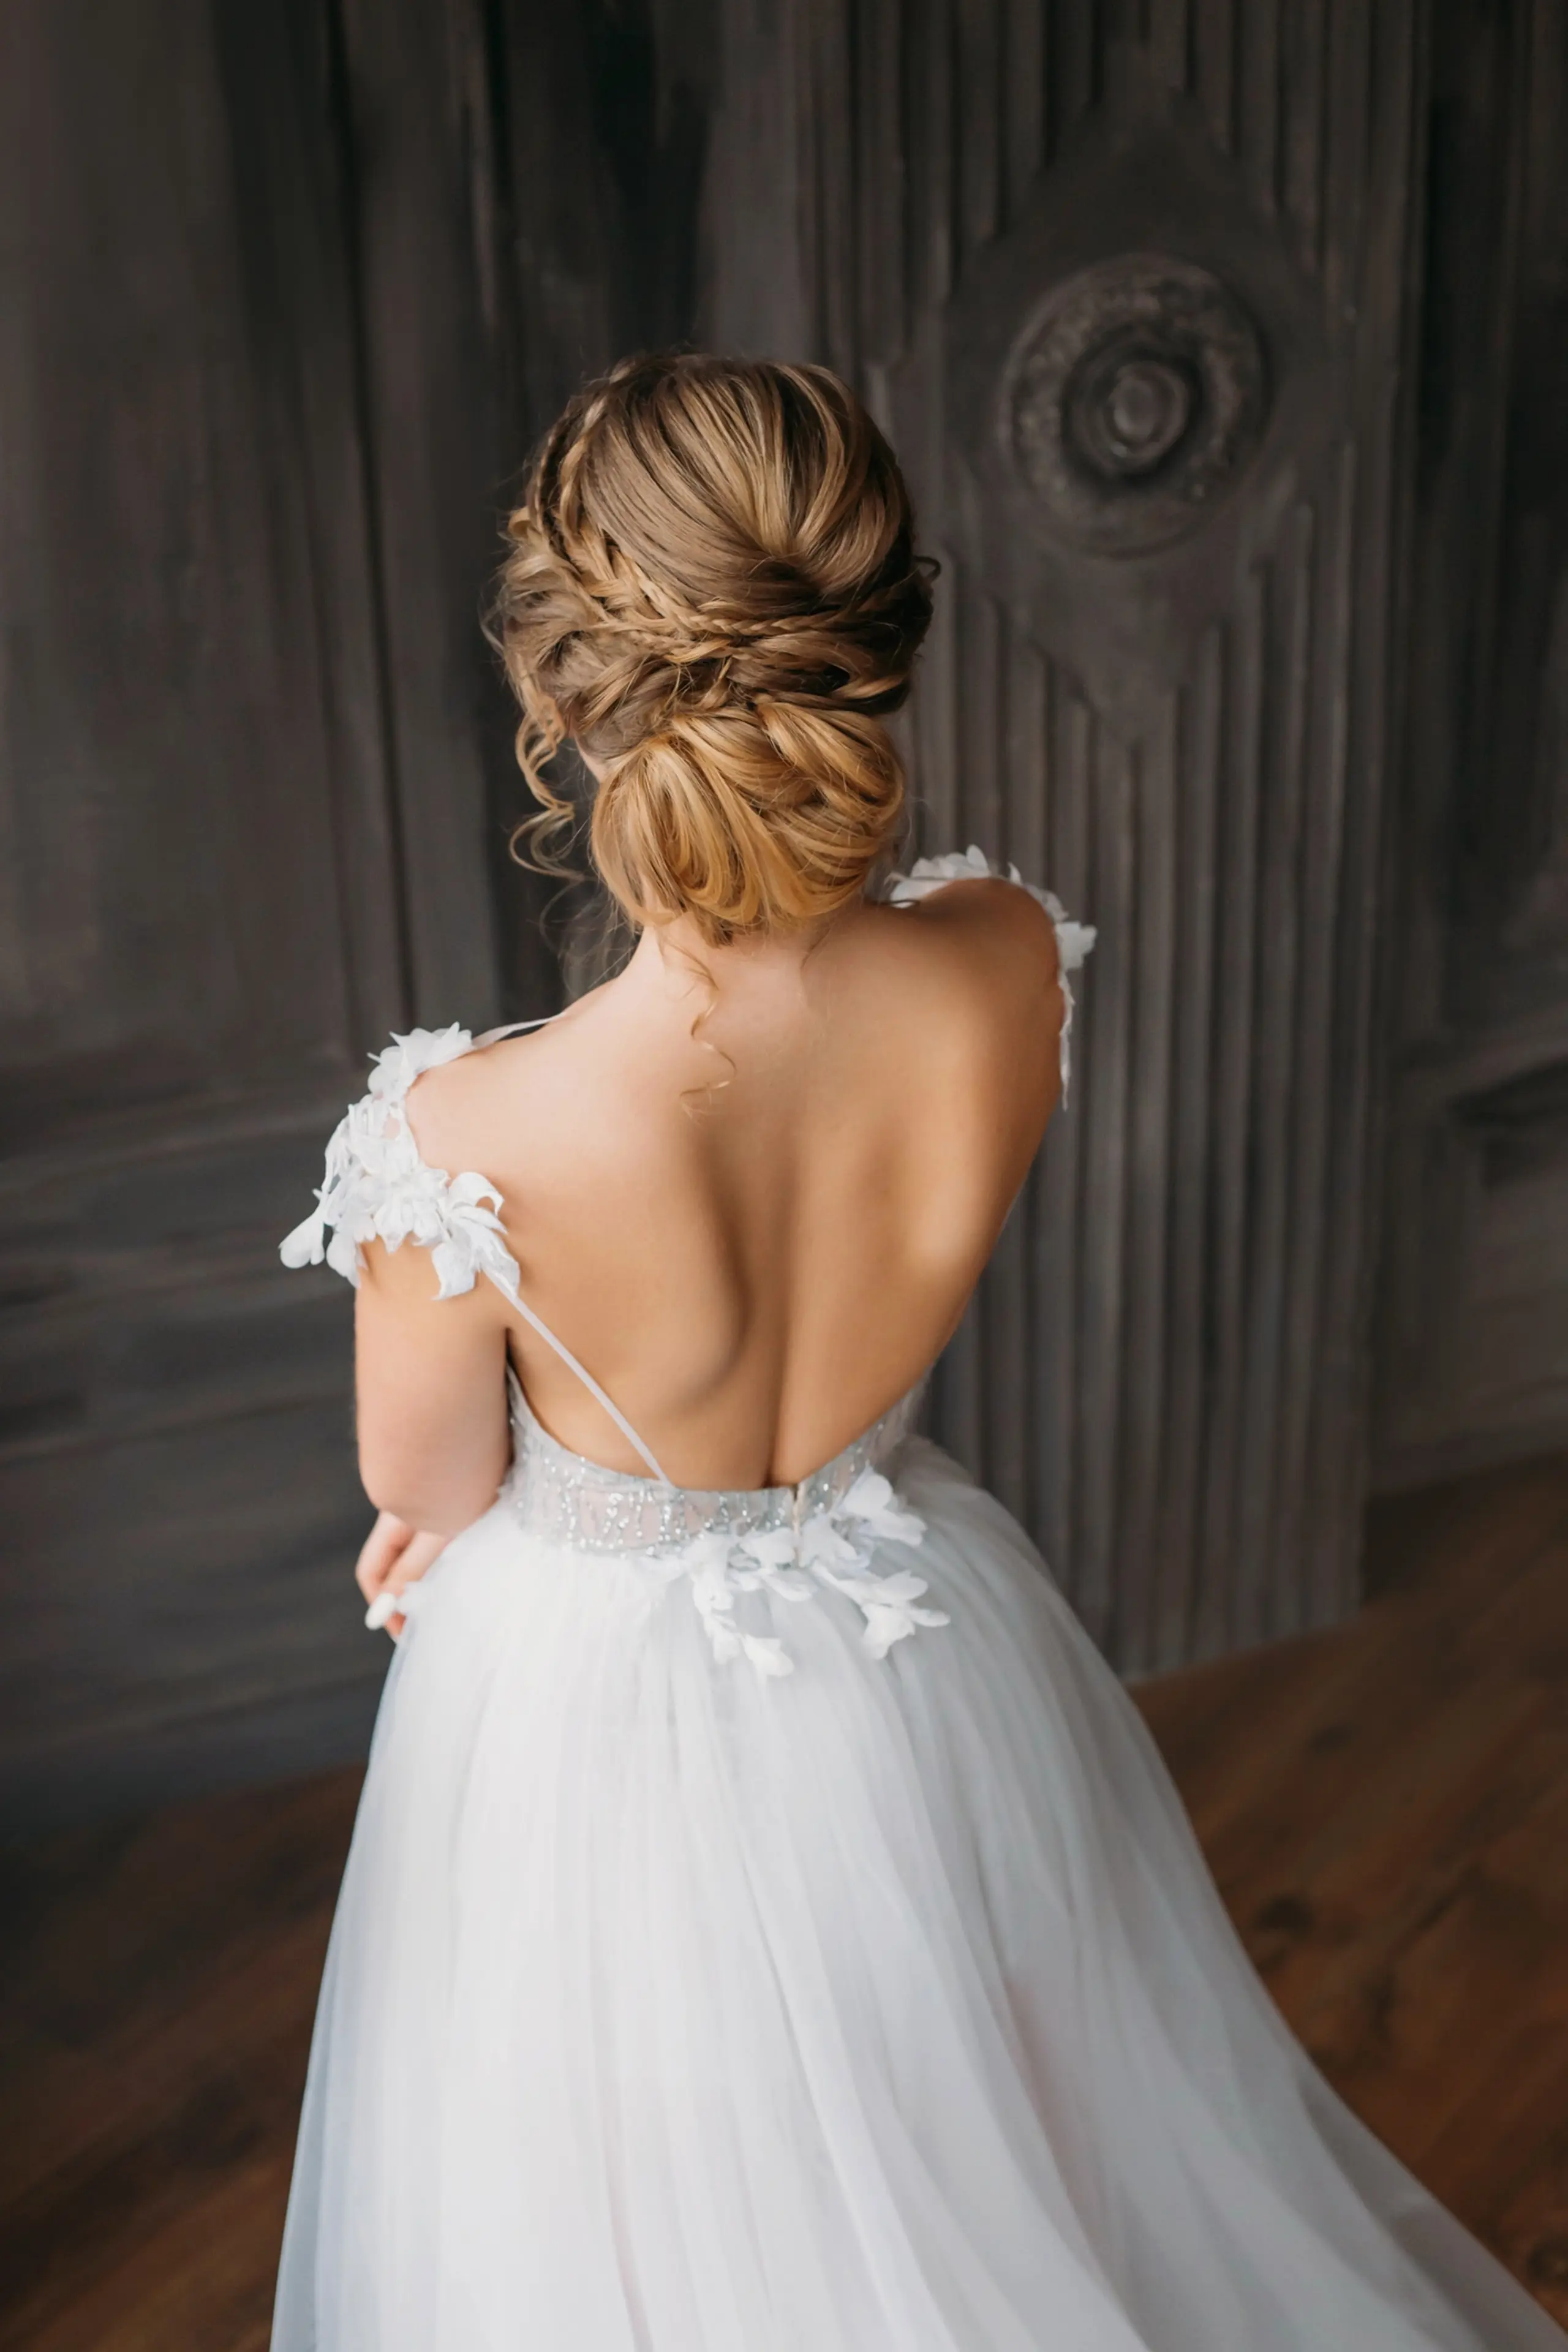 Braut mit hochgesteckten Haaren